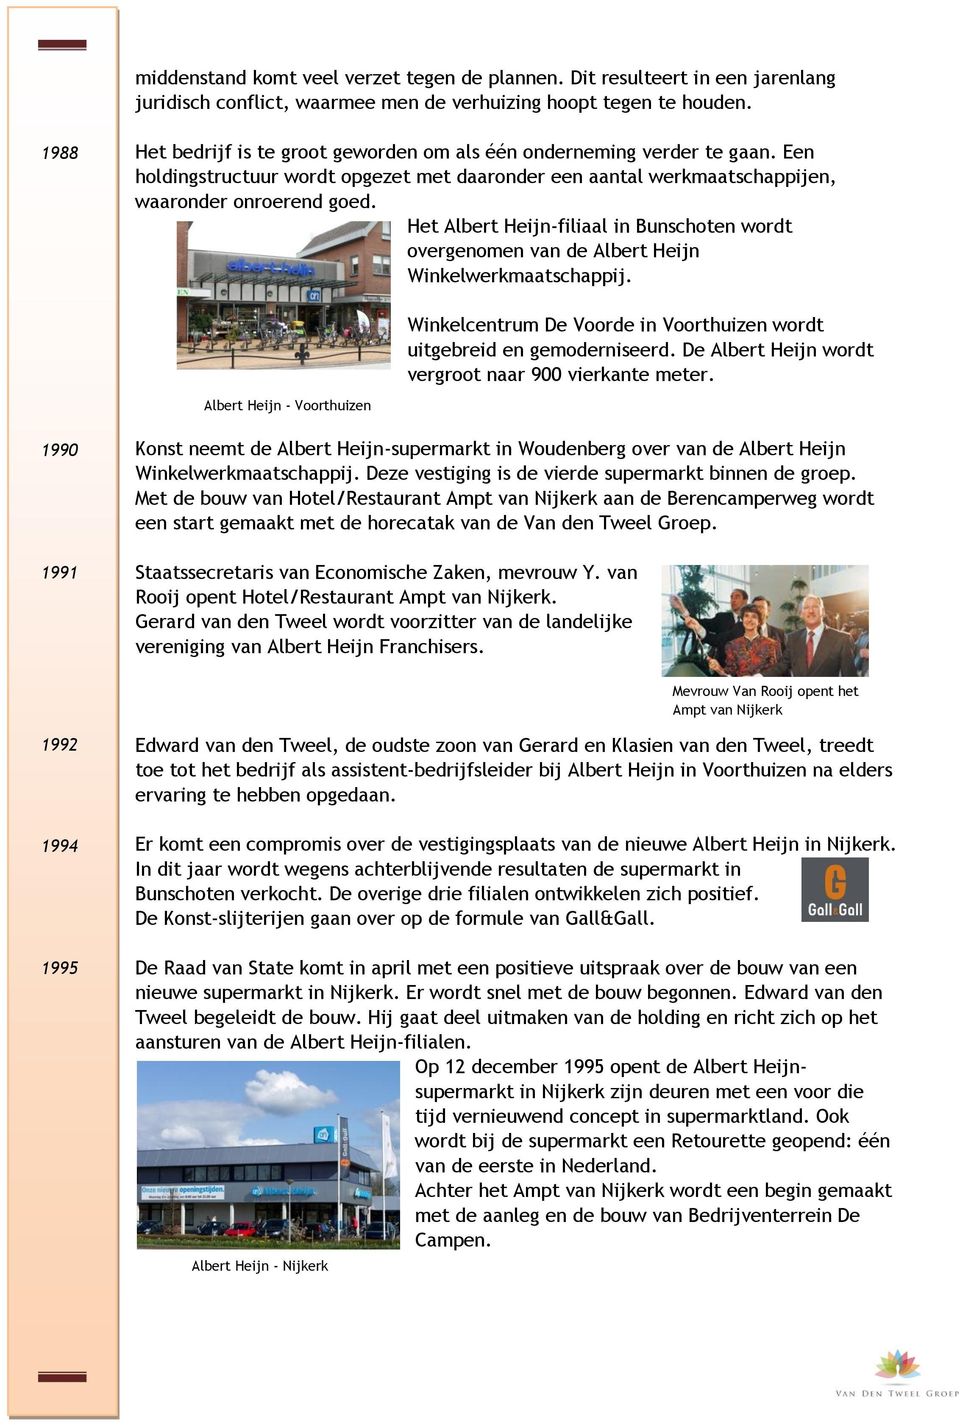 Het Albert Heijn-filiaal in Bunschoten wordt overgenomen van de Albert Heijn Winkelwerkmaatschappij. Winkelcentrum De Voorde in Voorthuizen wordt uitgebreid en gemoderniseerd.